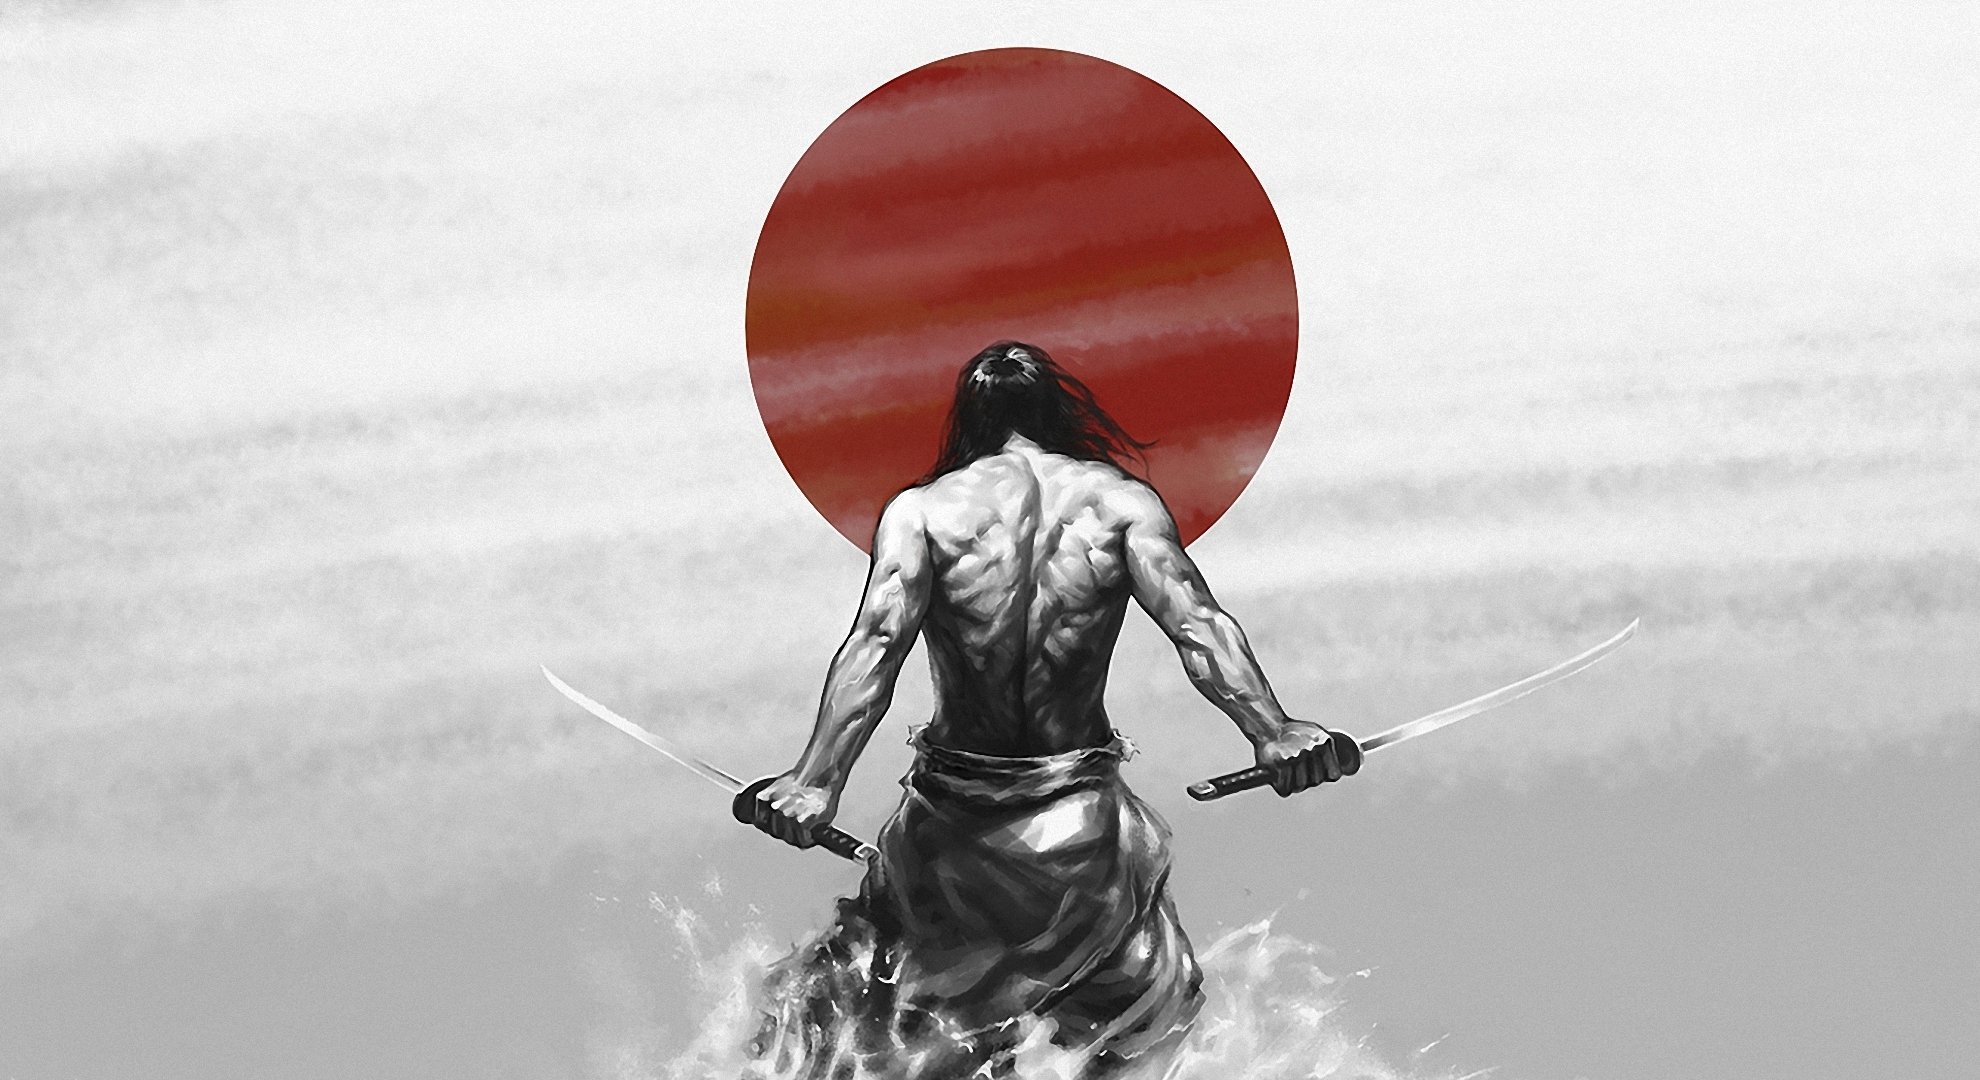 самурай буси катана япония солнце воин мужество смелость путь воина катаны сила мышцы рисунок обои